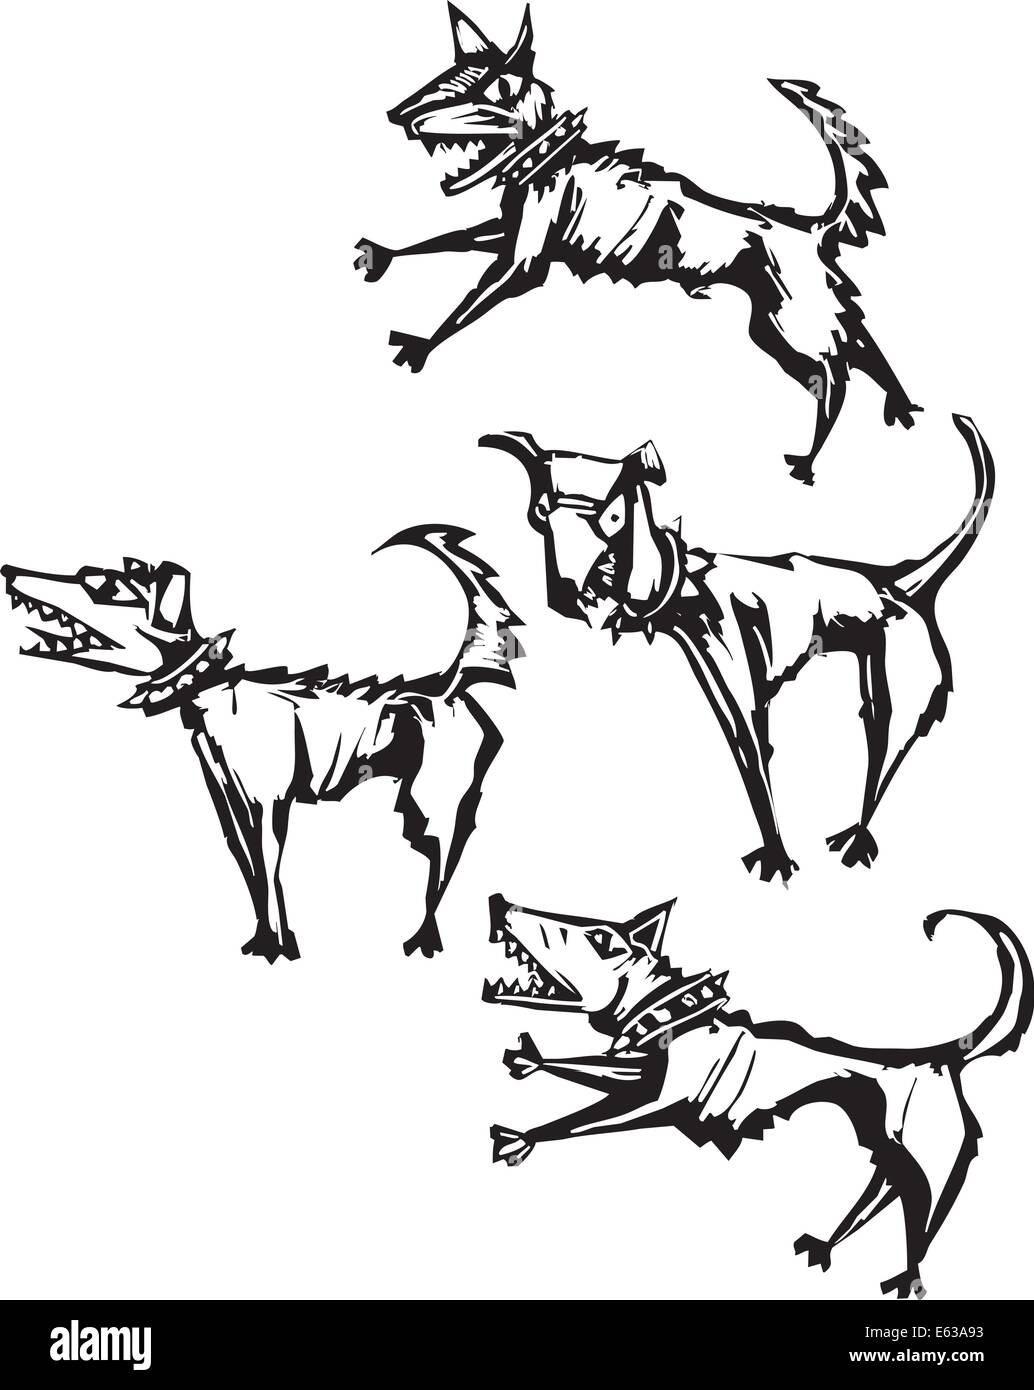 Vier unheimlich böse Hunde in einem Scratch Board Stil gerendert. Stock Vektor